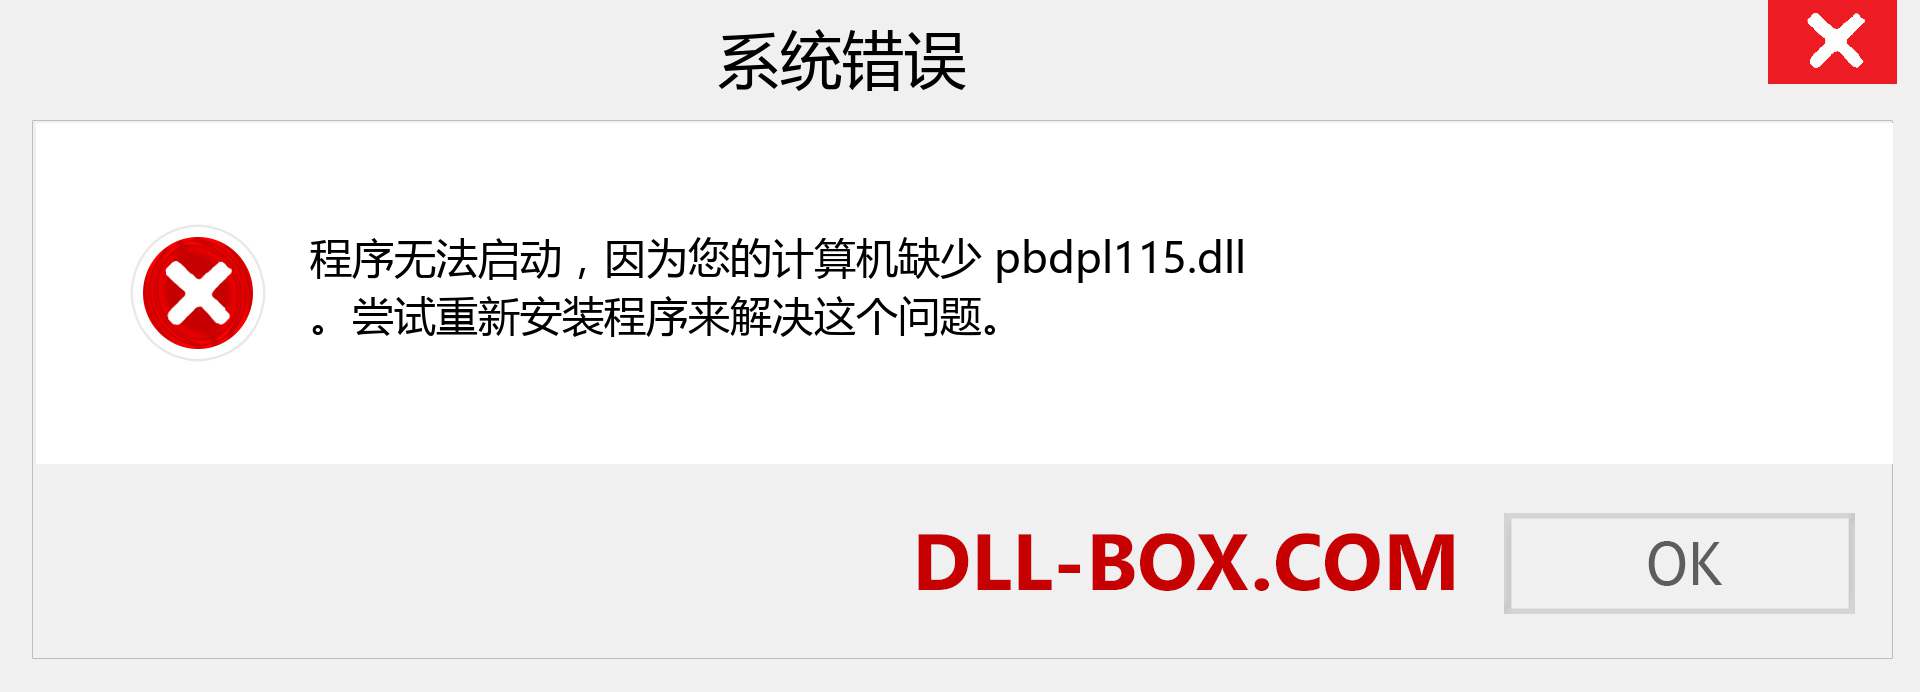 pbdpl115.dll 文件丢失？。 适用于 Windows 7、8、10 的下载 - 修复 Windows、照片、图像上的 pbdpl115 dll 丢失错误